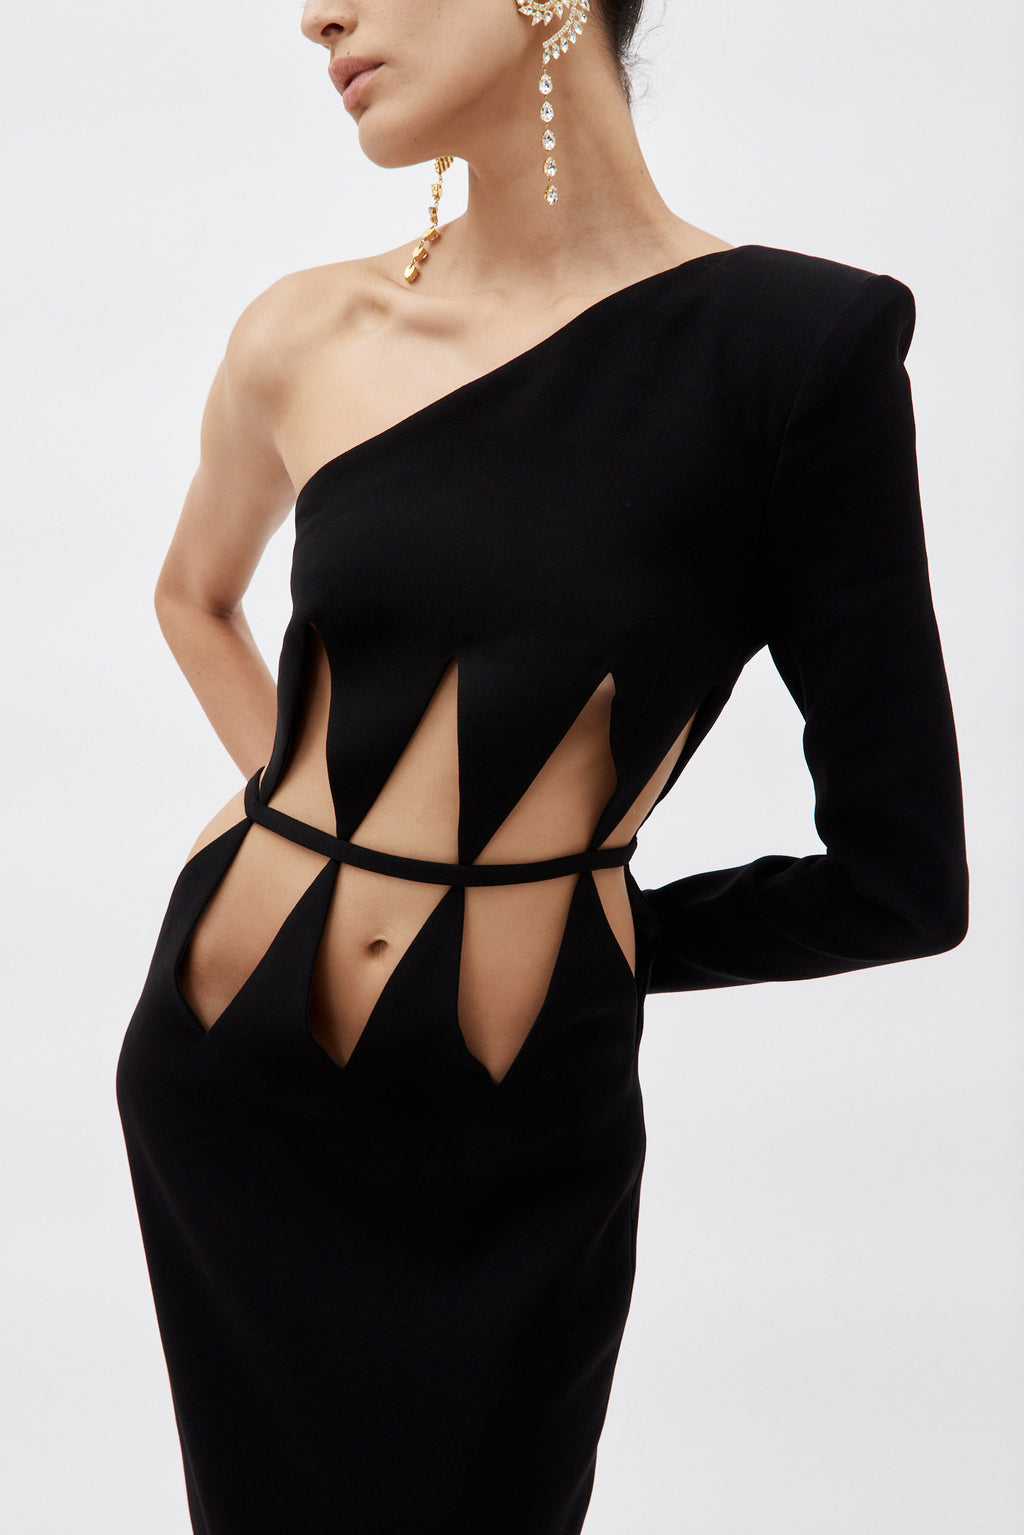 One Shoulder Black Diamond Cut Out Dress